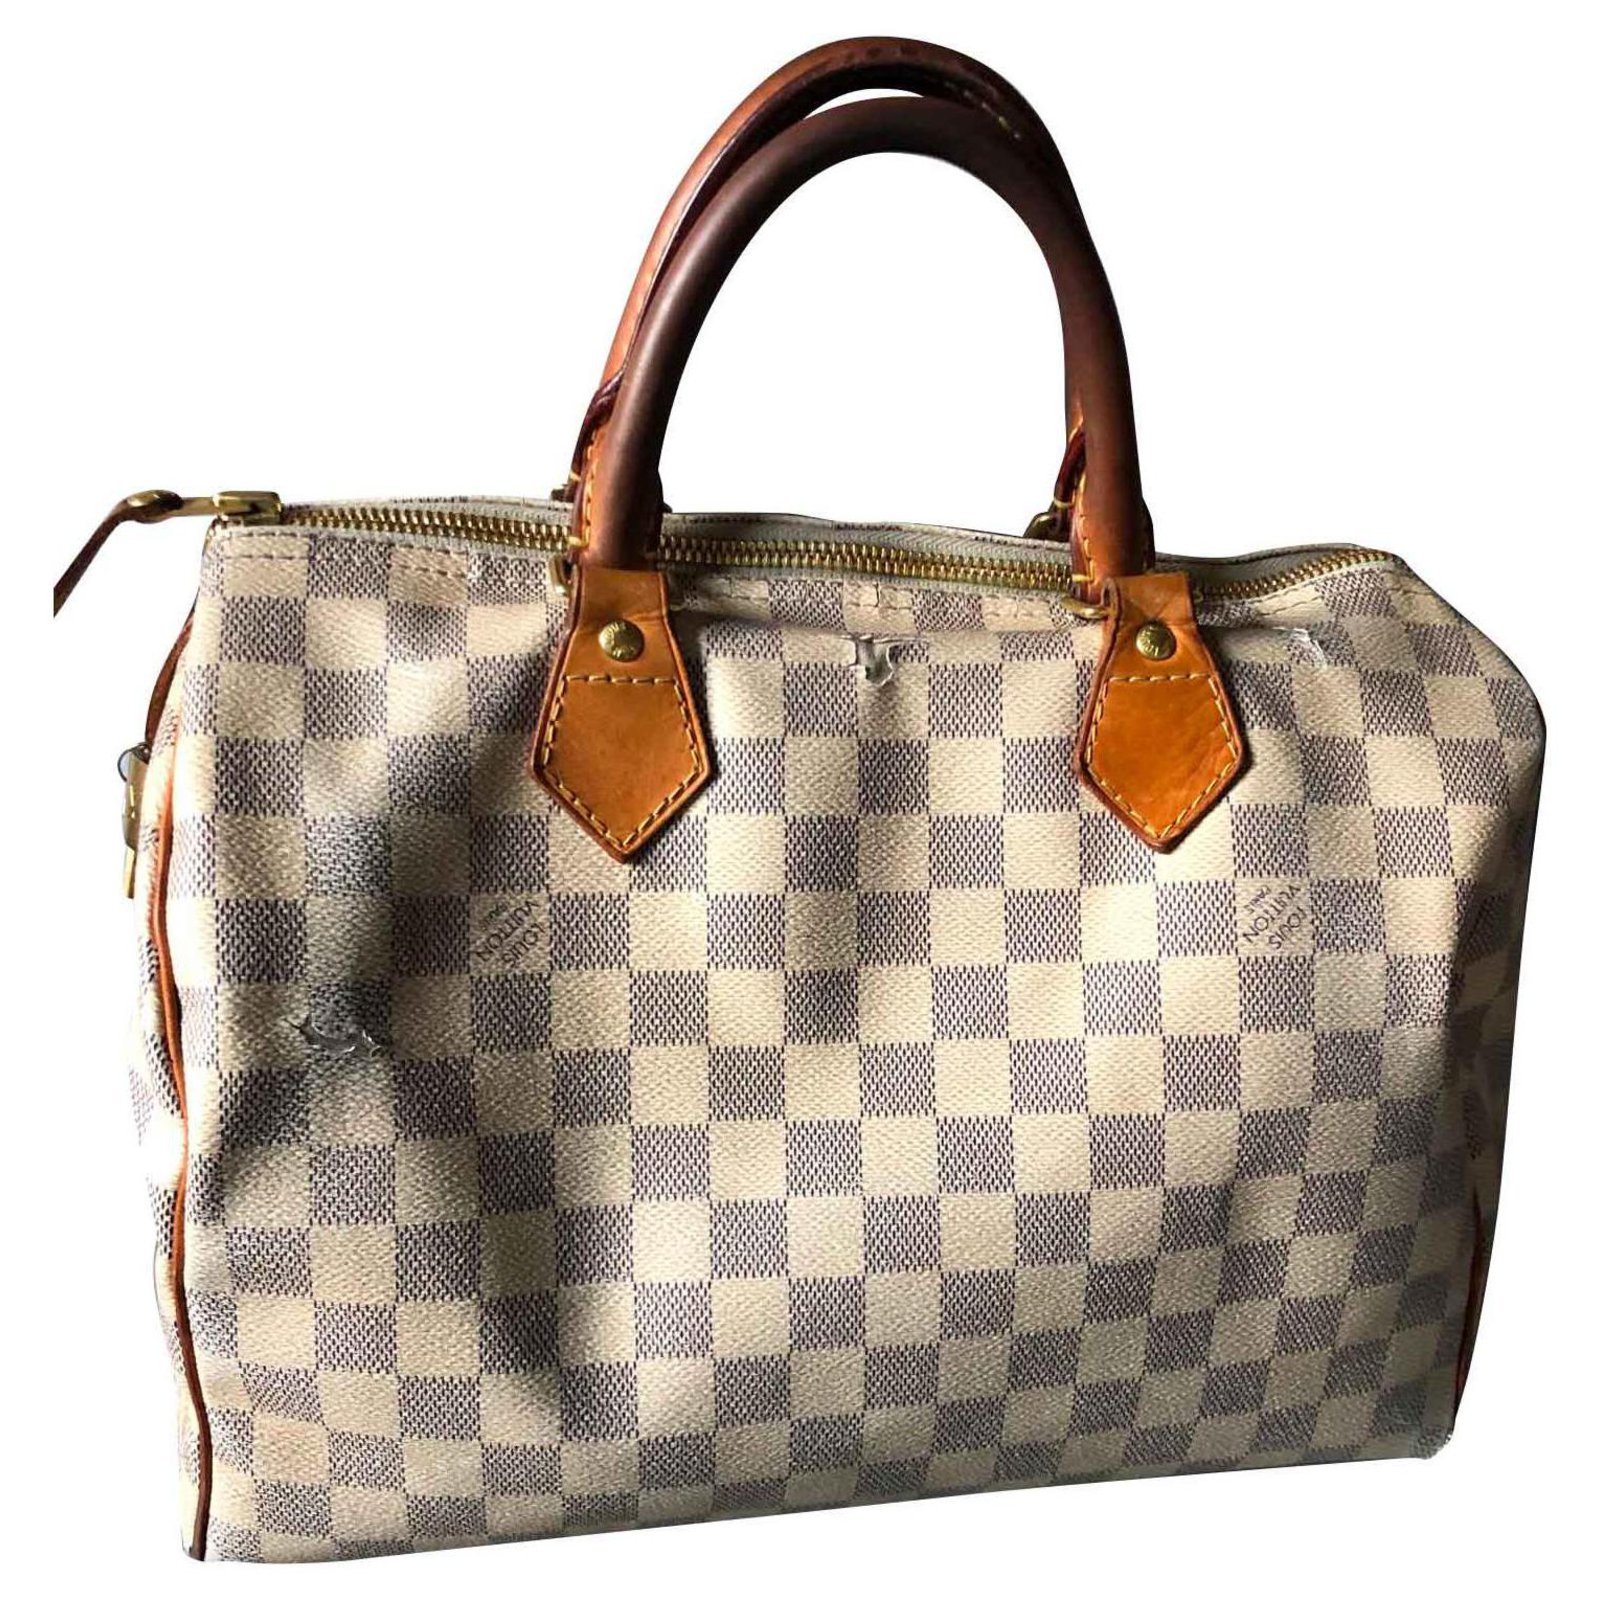 louis vuitton checkered handbags